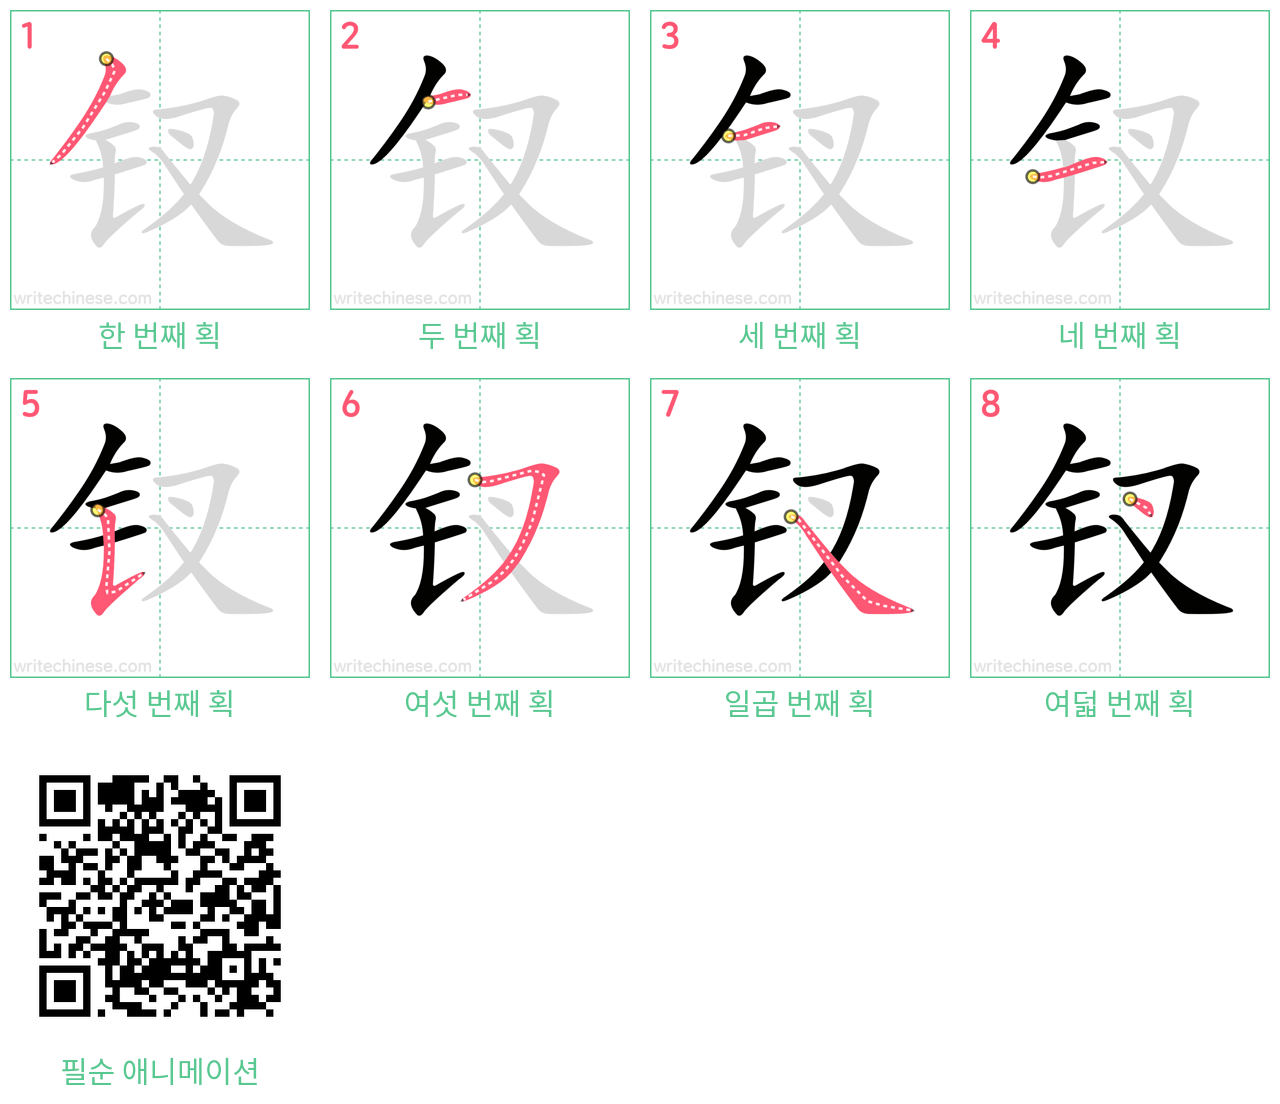 钗 step-by-step stroke order diagrams